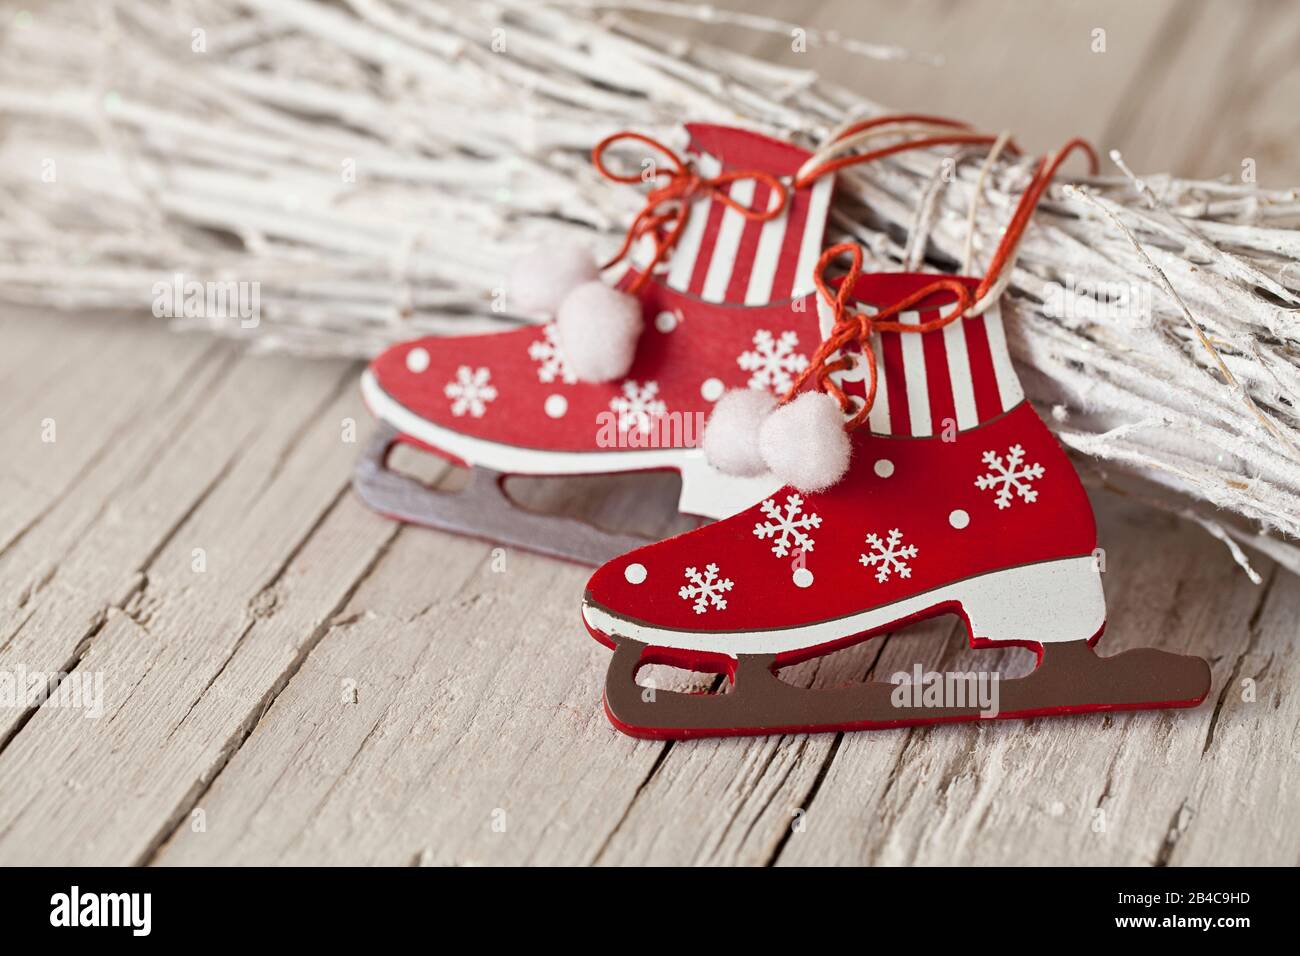 Dekoratives Weihnachtsfest nordischer Stil in Rot und Weiß mit niedlichem Schmuck in Eis-Skate-Form Stockfoto